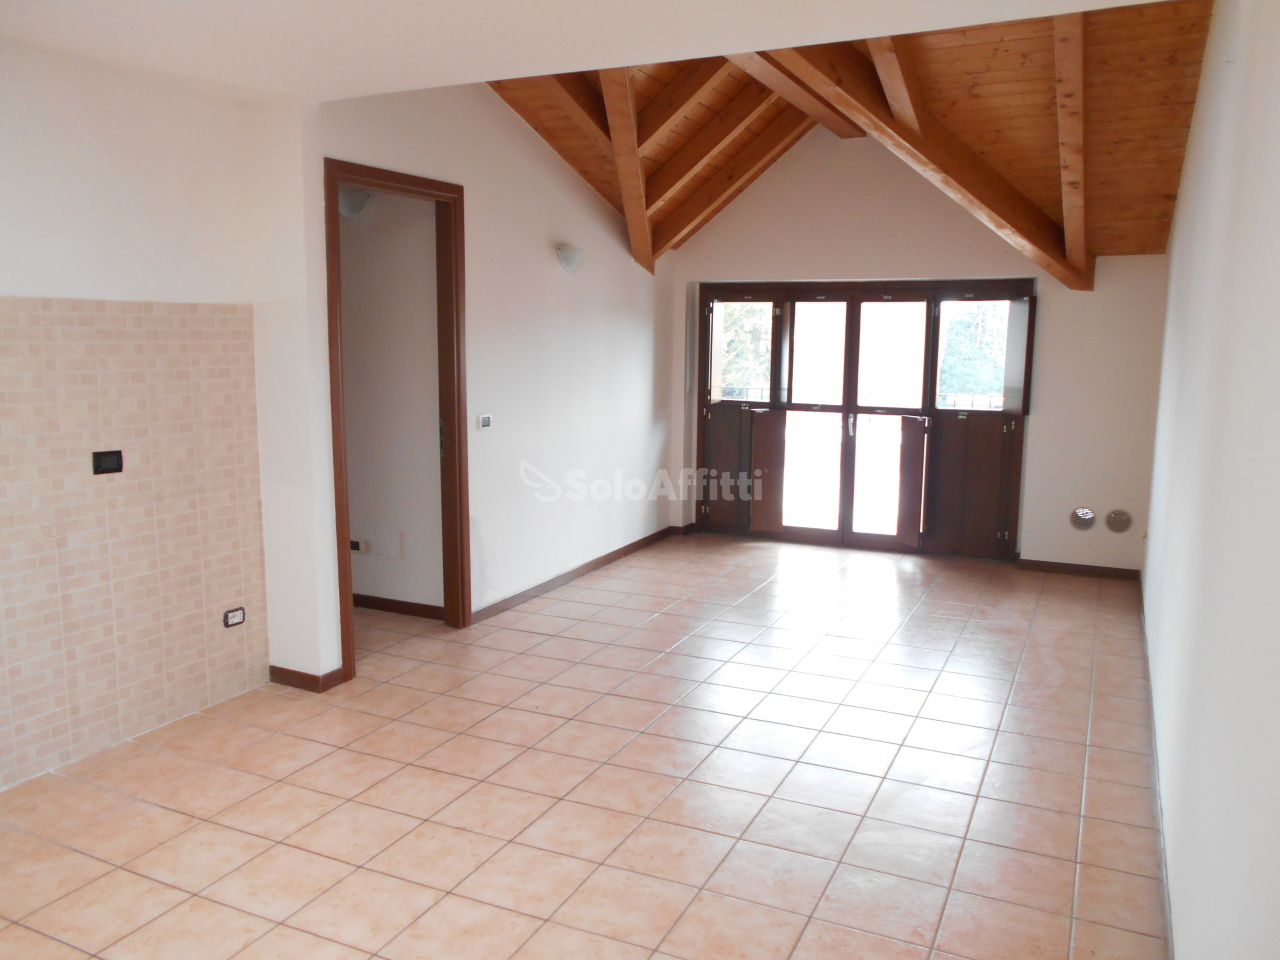 Appartamento in affitto a Cadorago, 2 locali, prezzo € 500 | PortaleAgenzieImmobiliari.it